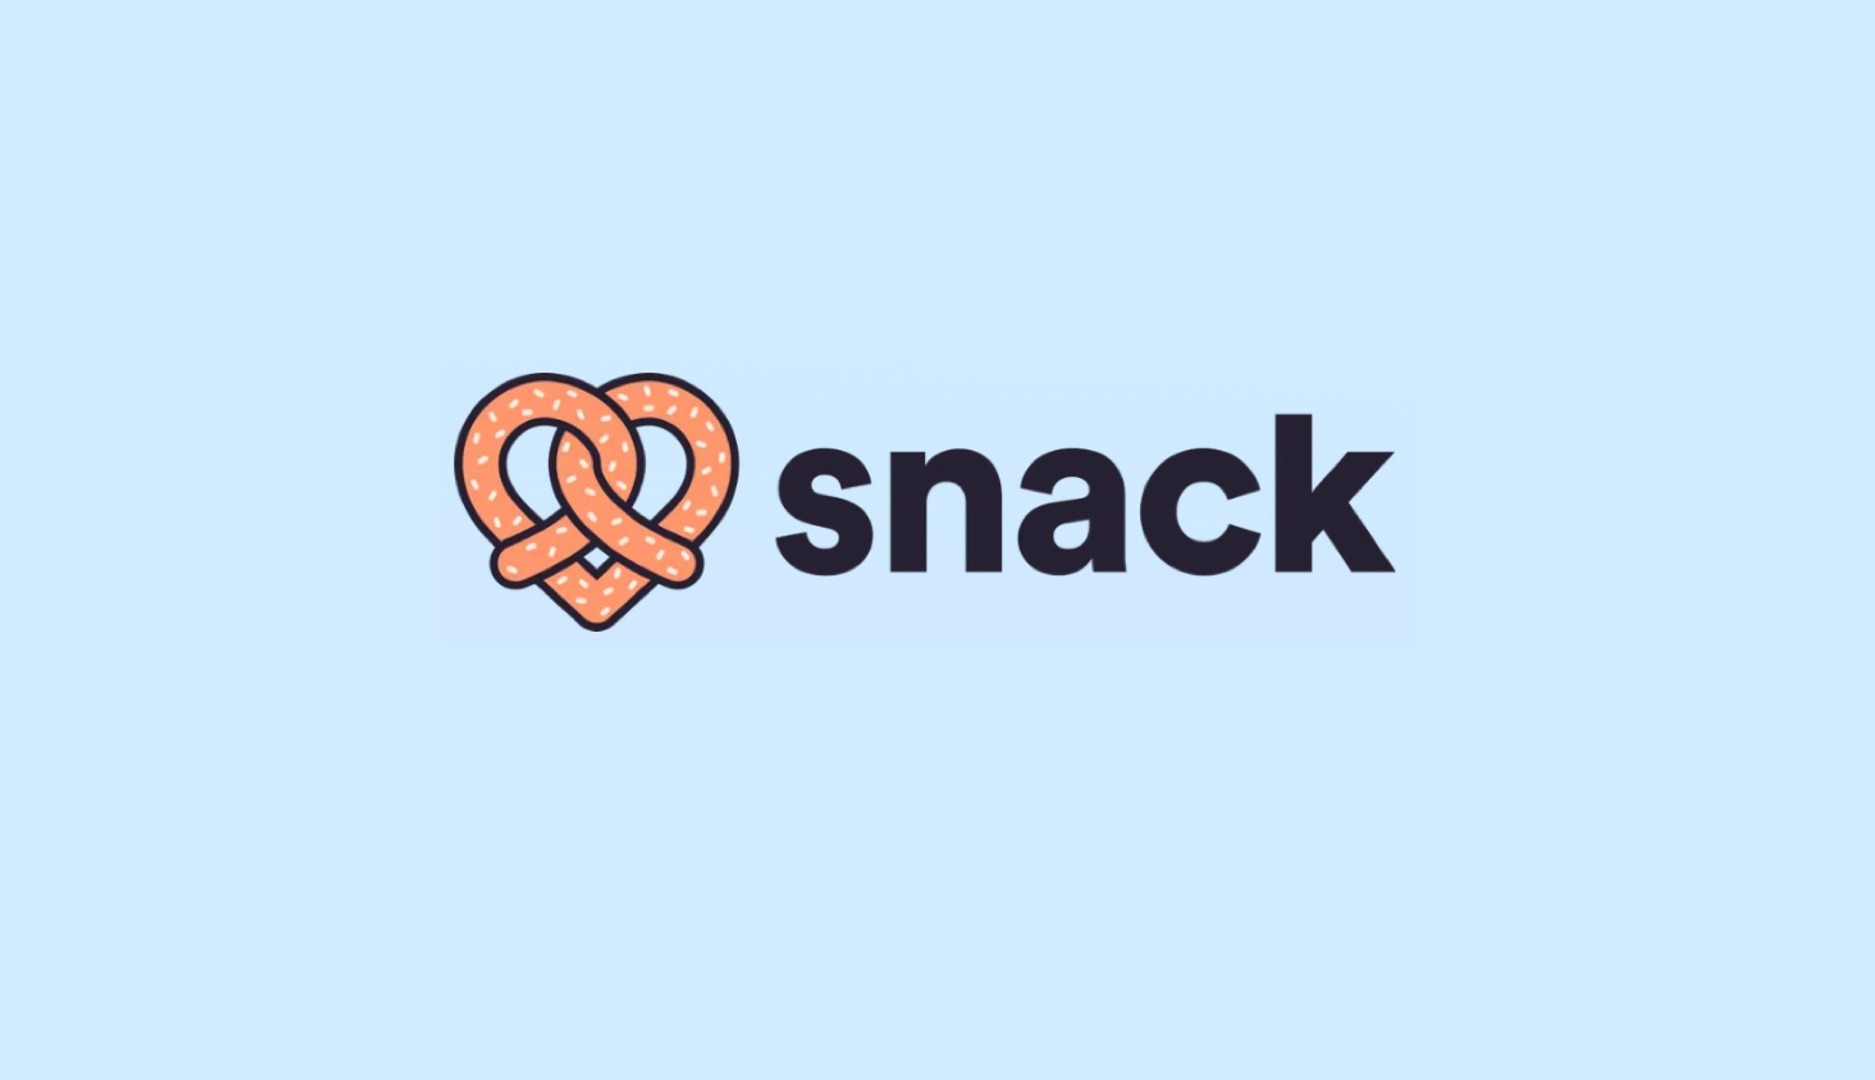 La aplicación de citas Snack permite relacionarse a través de avatares entrenados por IA